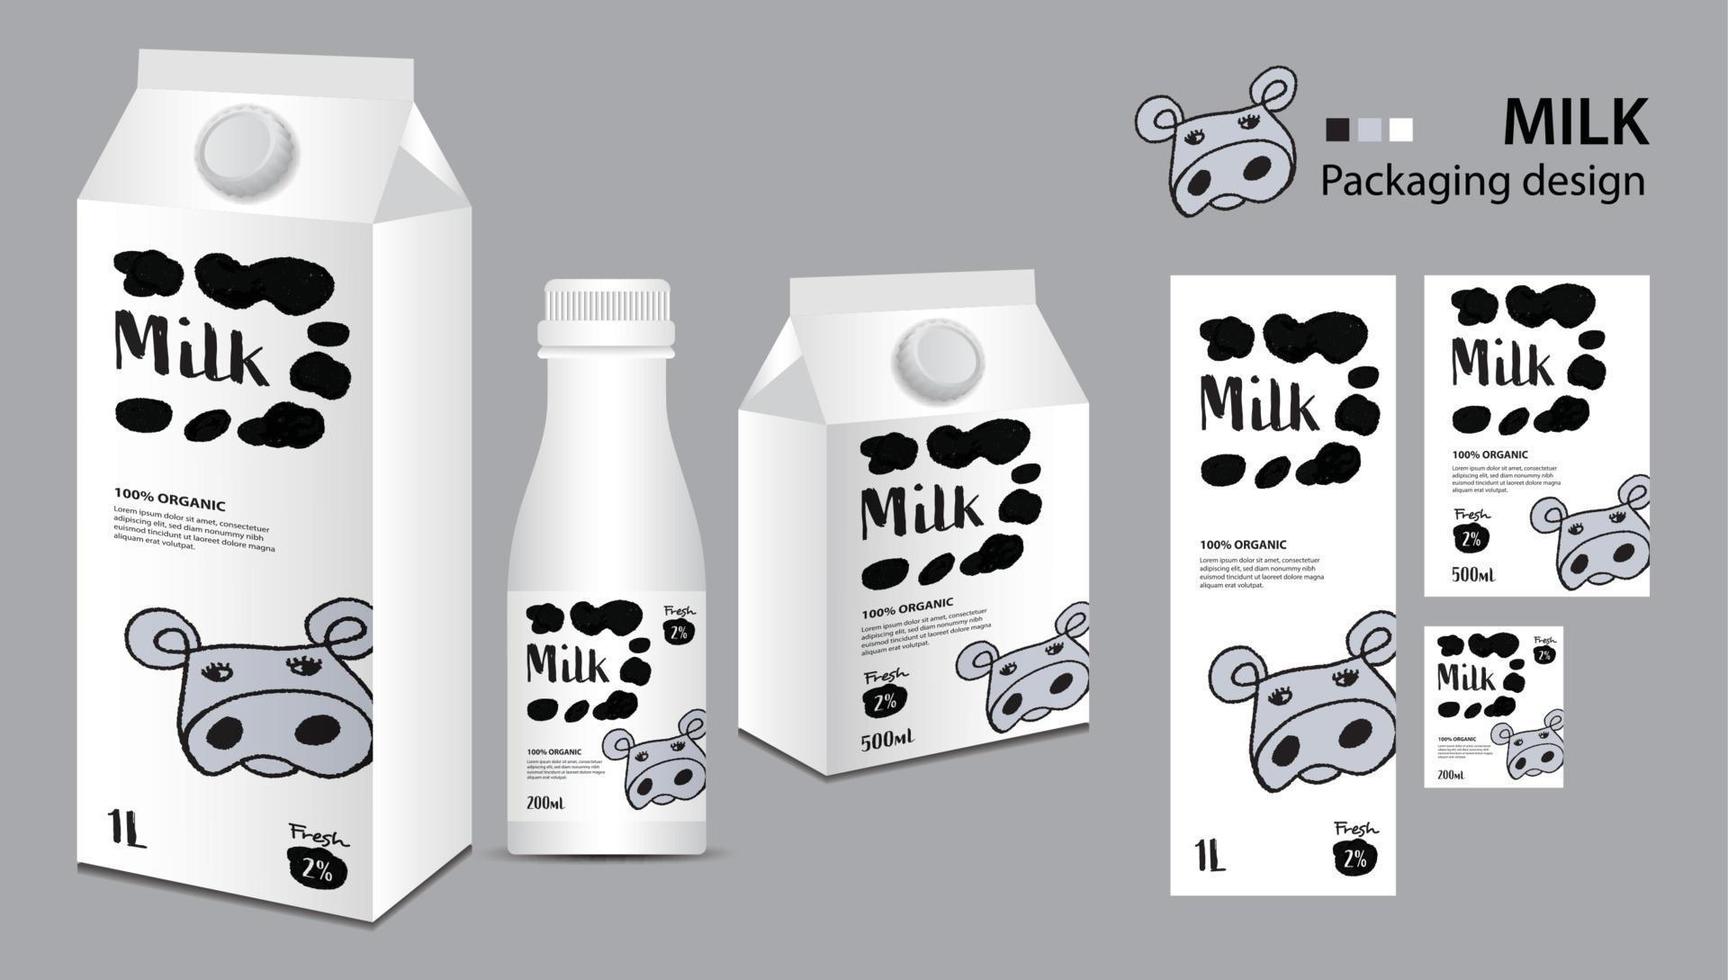 conception d'emballage de lait, conception d'étiquettes de lait, ensemble de boîtes de lait et vecteur de bouteille, illustration 3d réaliste de boîte, modèle d'emballage créatif, conception de produit, bannière alimentaire, illustration de dessin animé de logo de vache mignonne